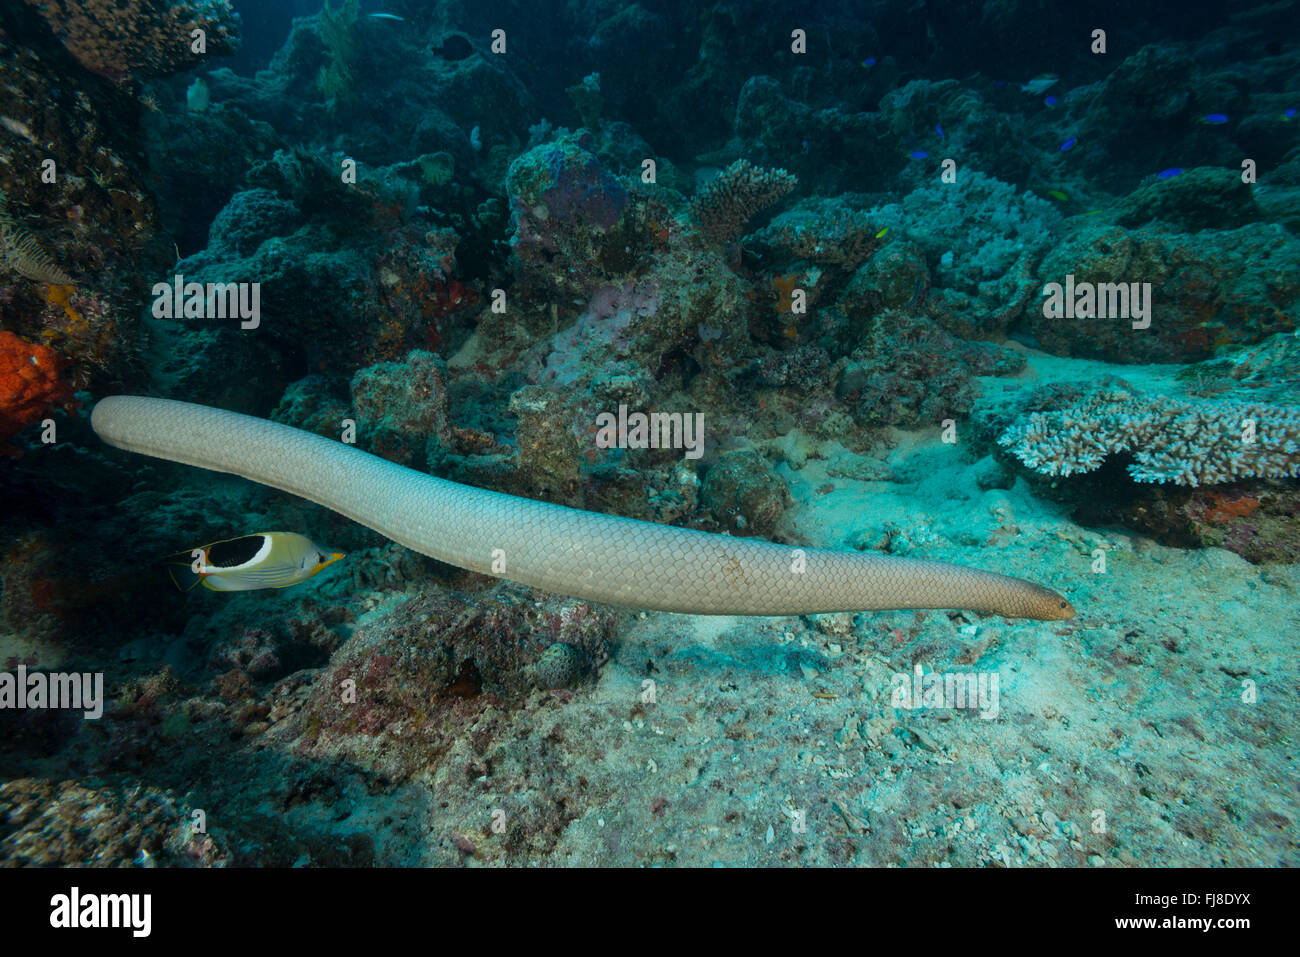 Mar oliva serpiente o la serpiente de mar de oro (Aipysurus laevis) en la GBR. Es una serpiente de mar venenosas especies encontradas en el Indo-Pac Foto de stock